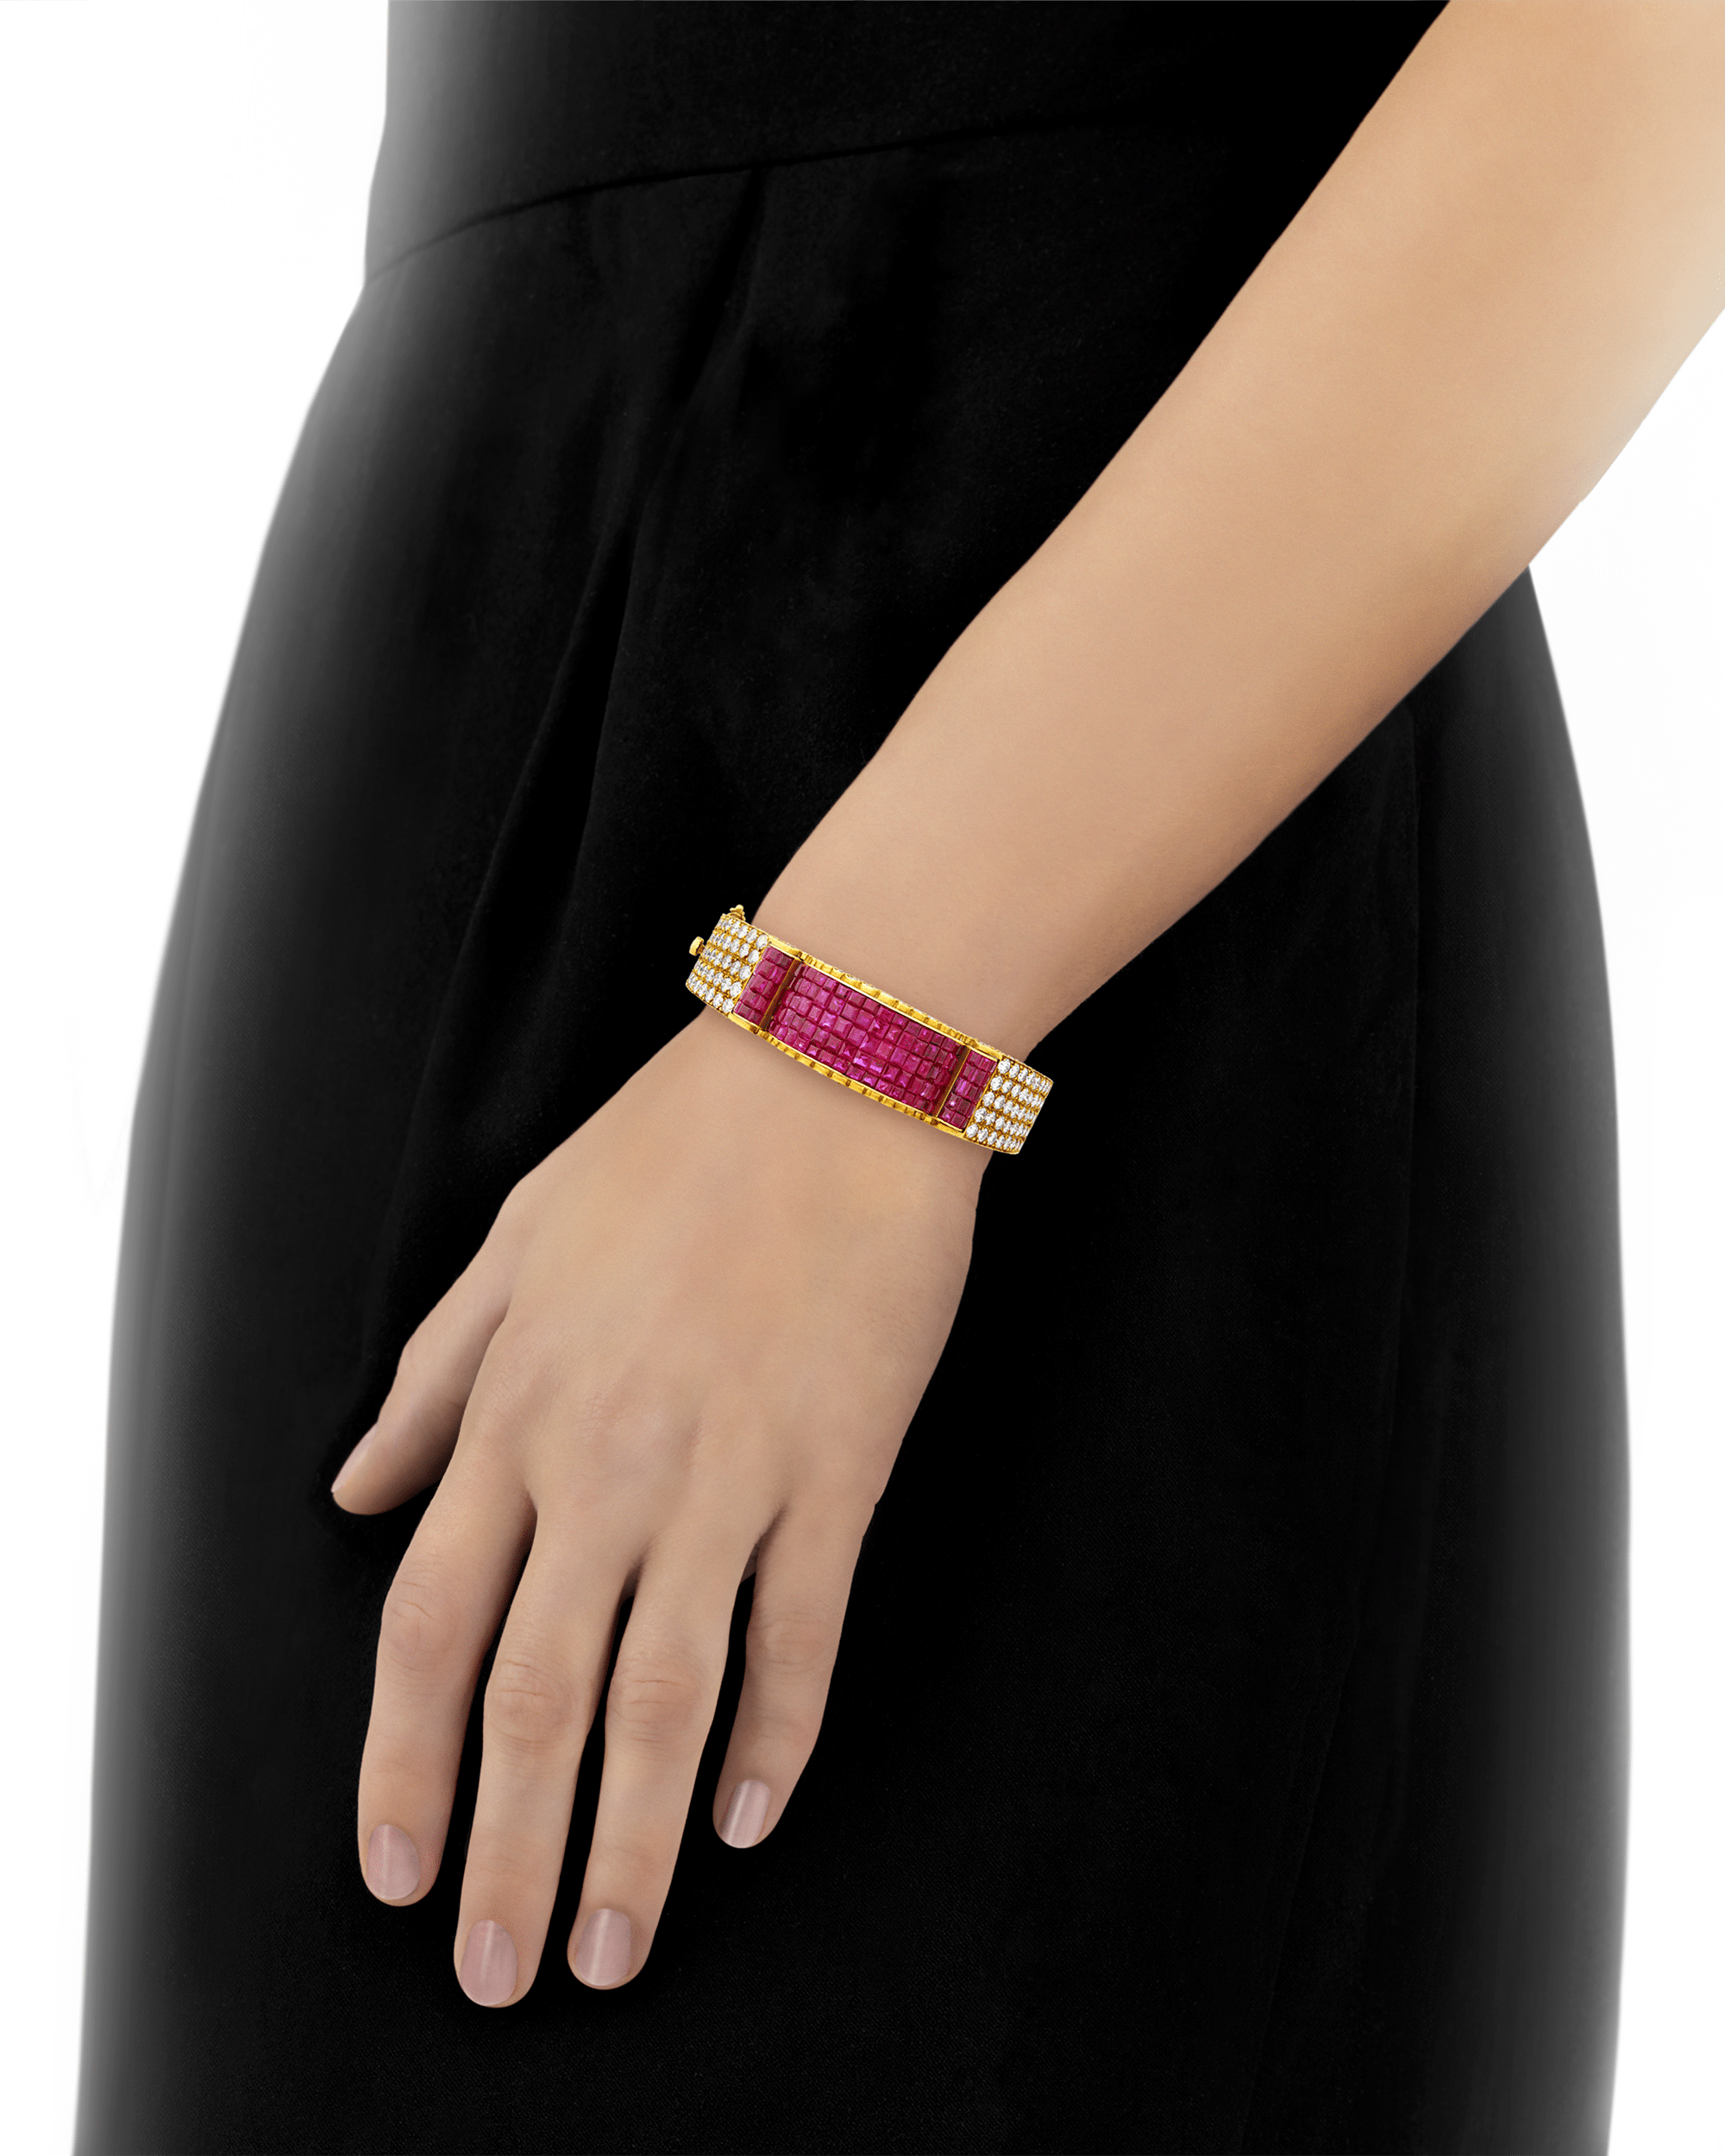 Ruby Bracelet by Van Cleef & Arpels, 22.50 Carats